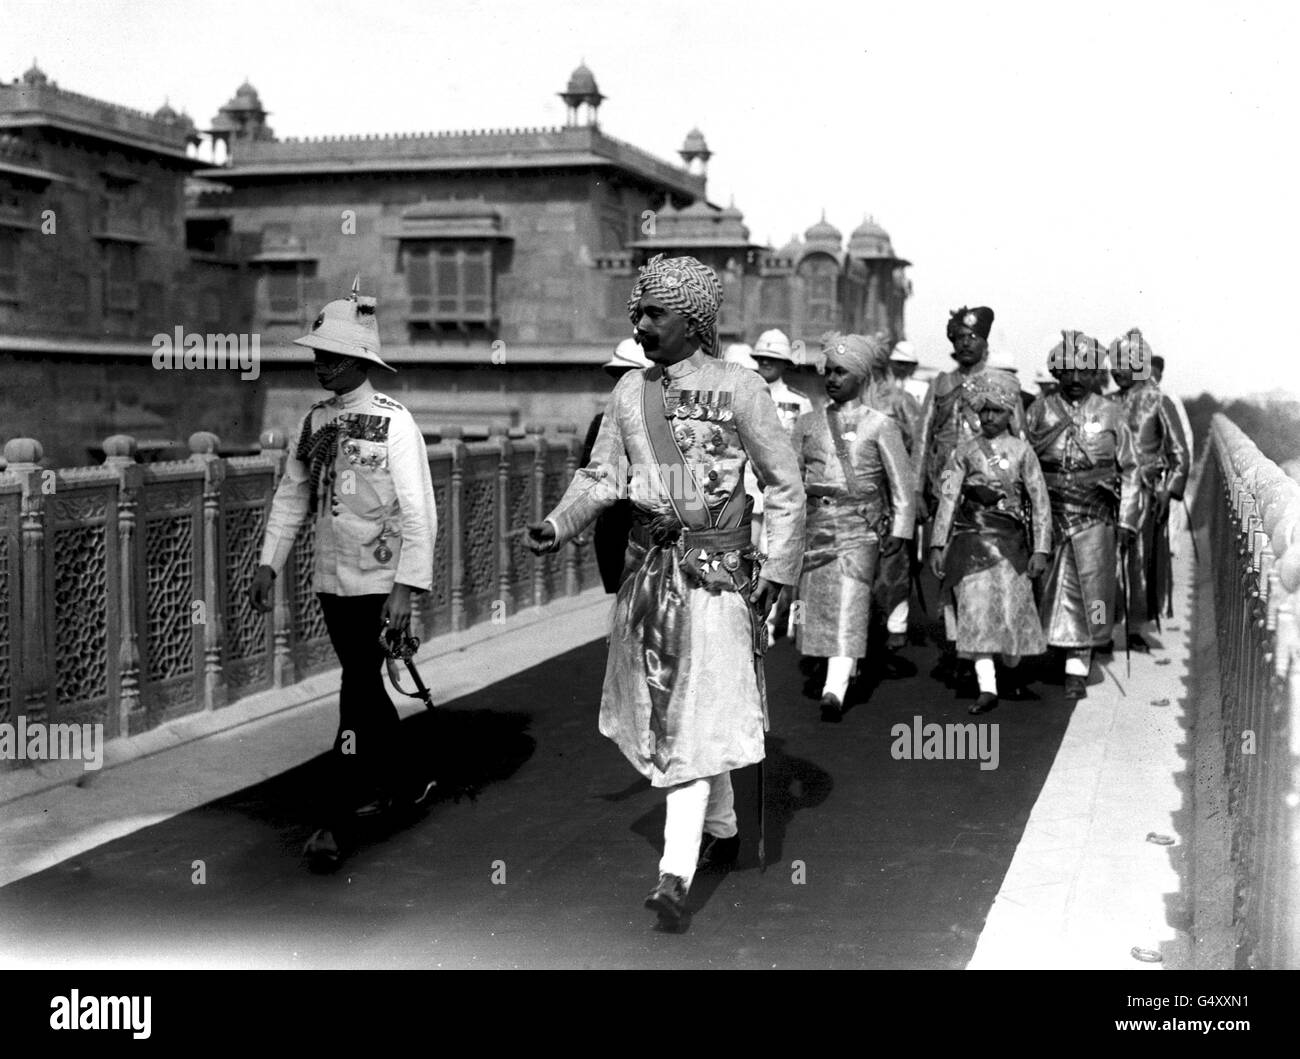 PA NEWS PHOTO 1921: LE RAJ BRITANNIQUE: La visite du prince de Galles au Japon et en Inde. Le prince de Galles, accompagné du Maharajah de Bikaner, se poursuit jusqu'à la salle durbar du fort de Ganga Niwas après l'arrivée de HRH. Banque D'Images